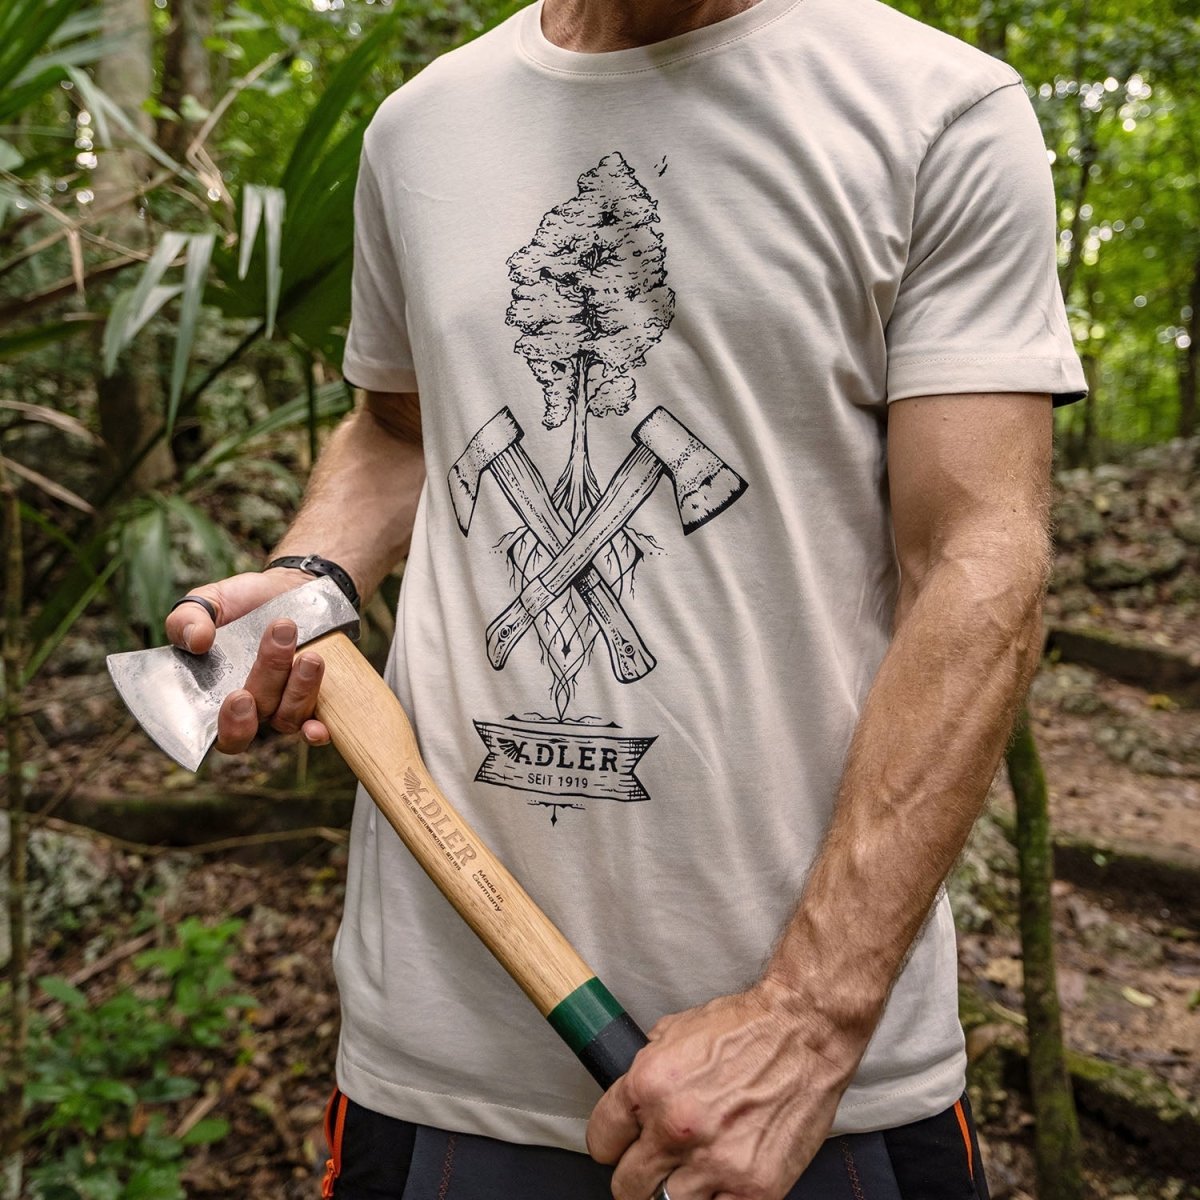 ADLER T-Shirt "Beile" - ADLER - Tools Made in Germany